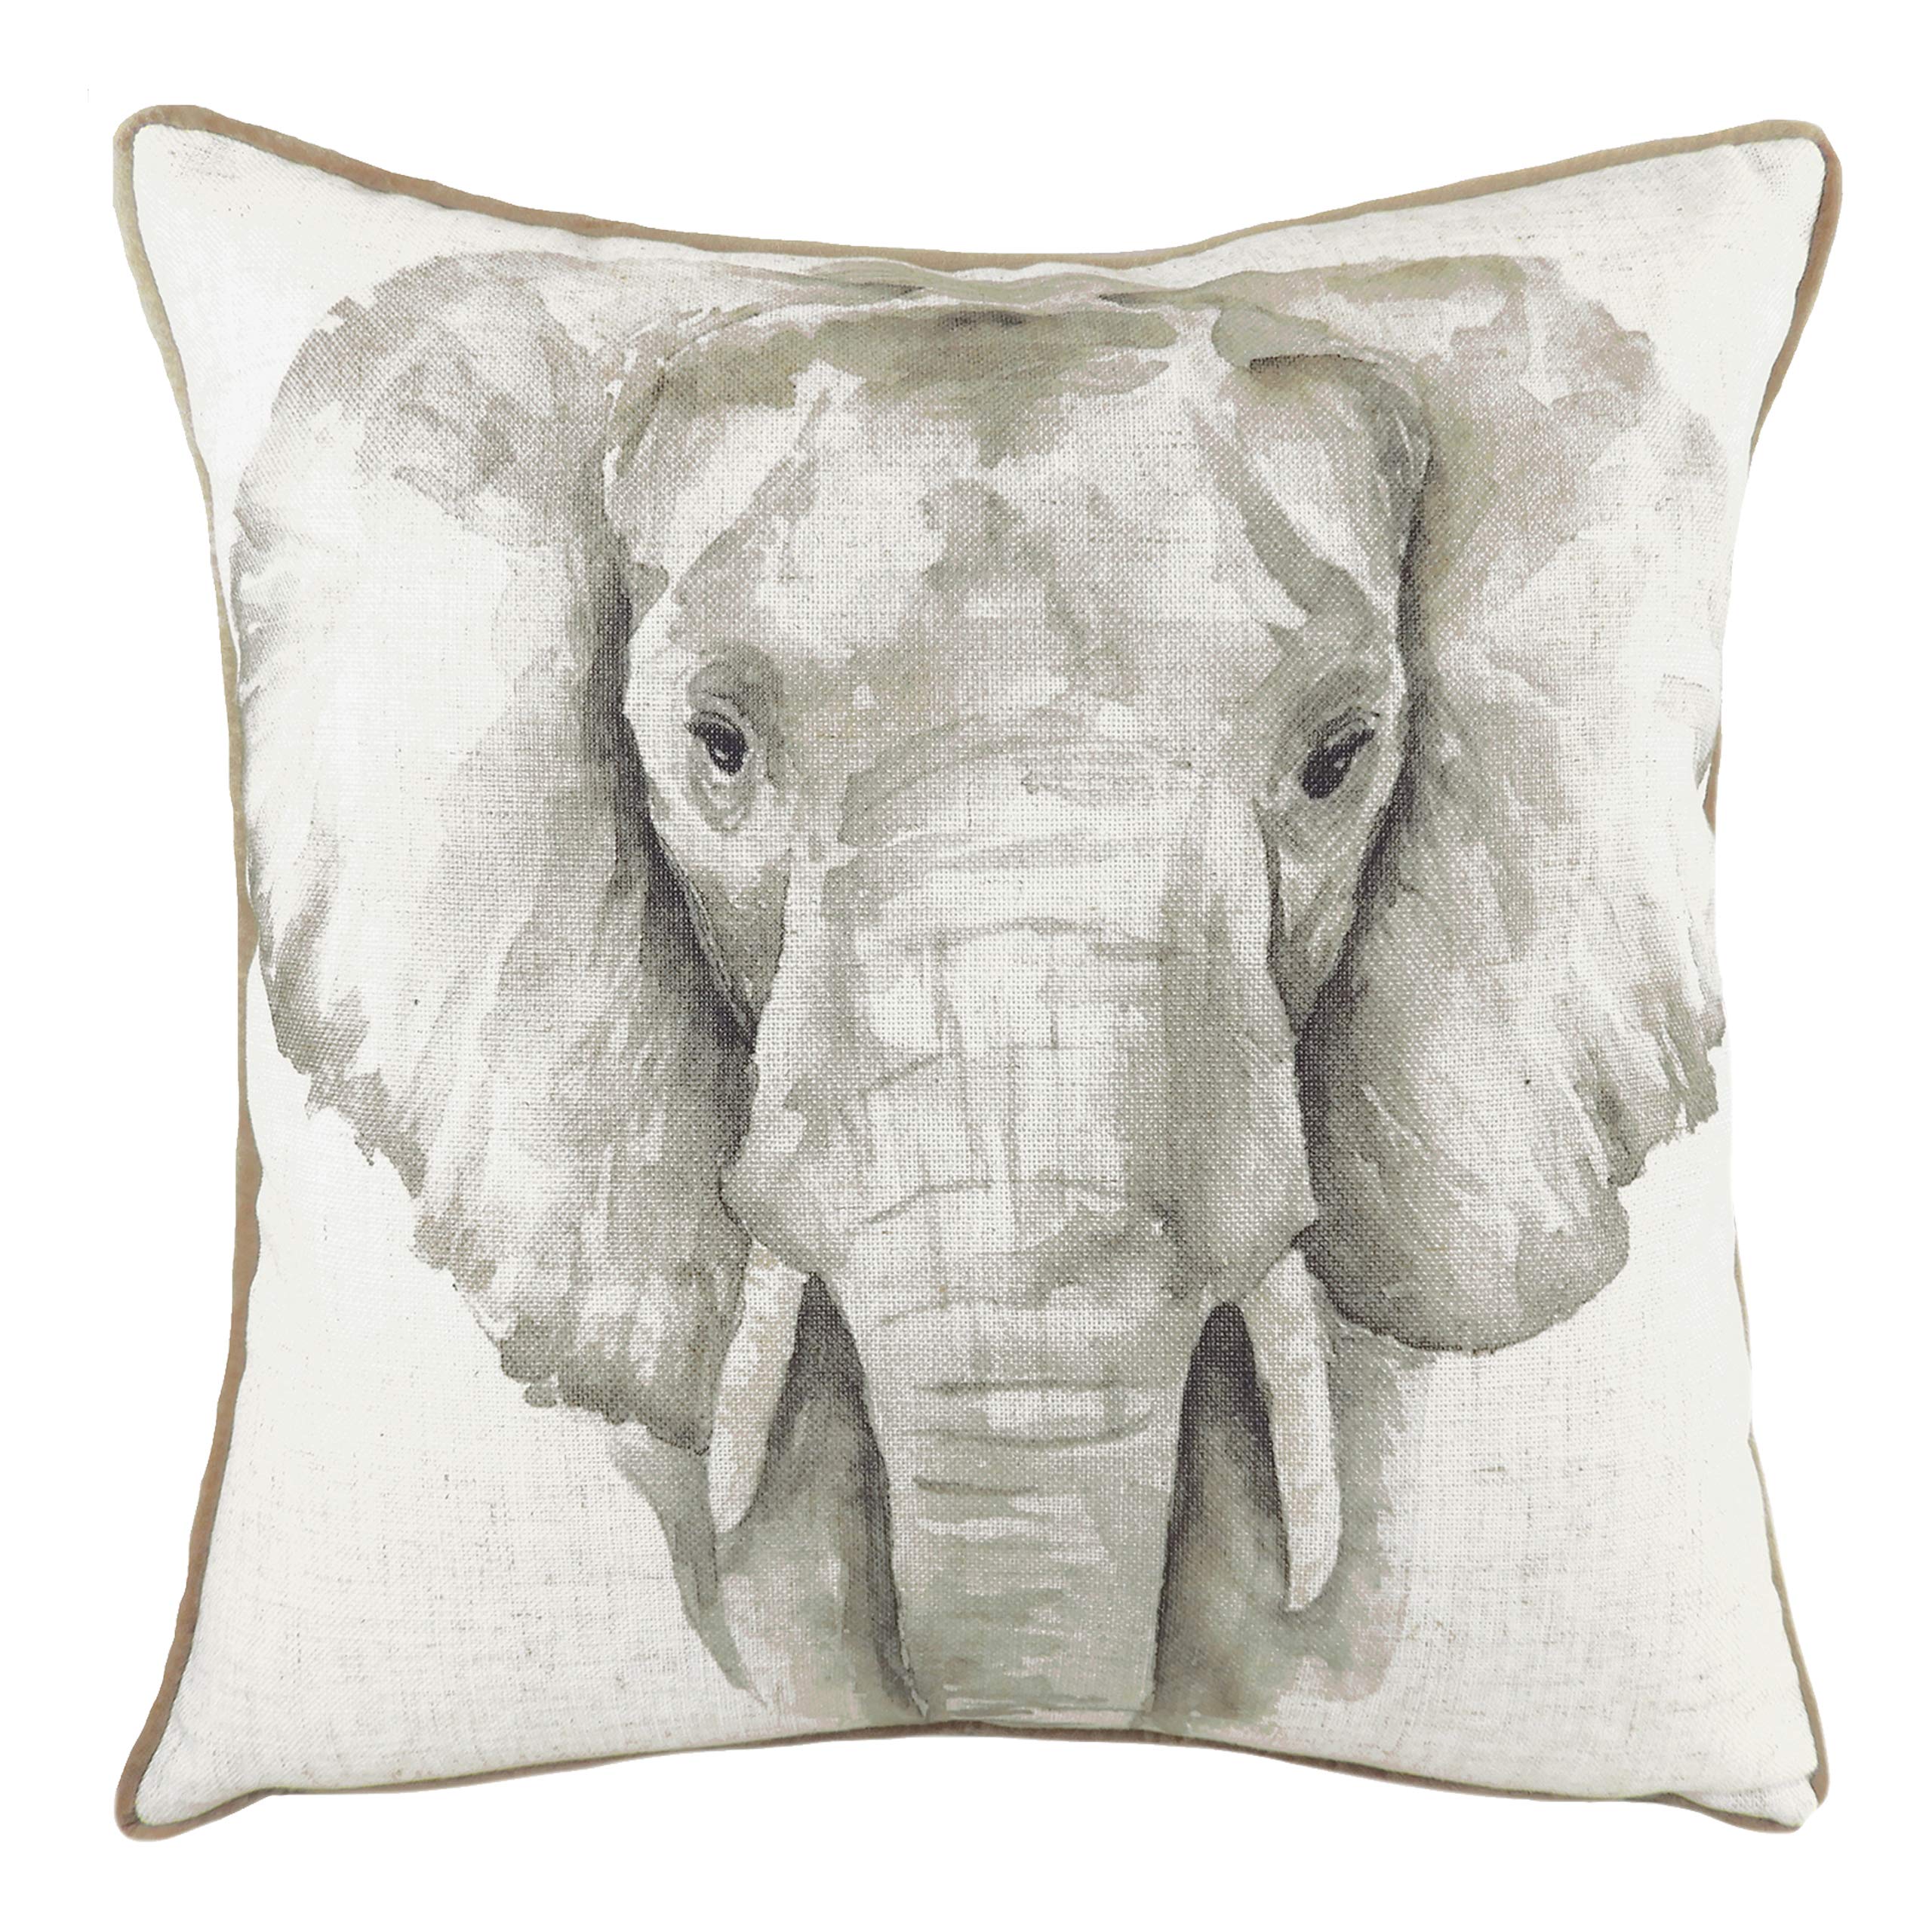 Evans Lichfield Safari Elephant Cushion Cover, White, 43 x 43 cm